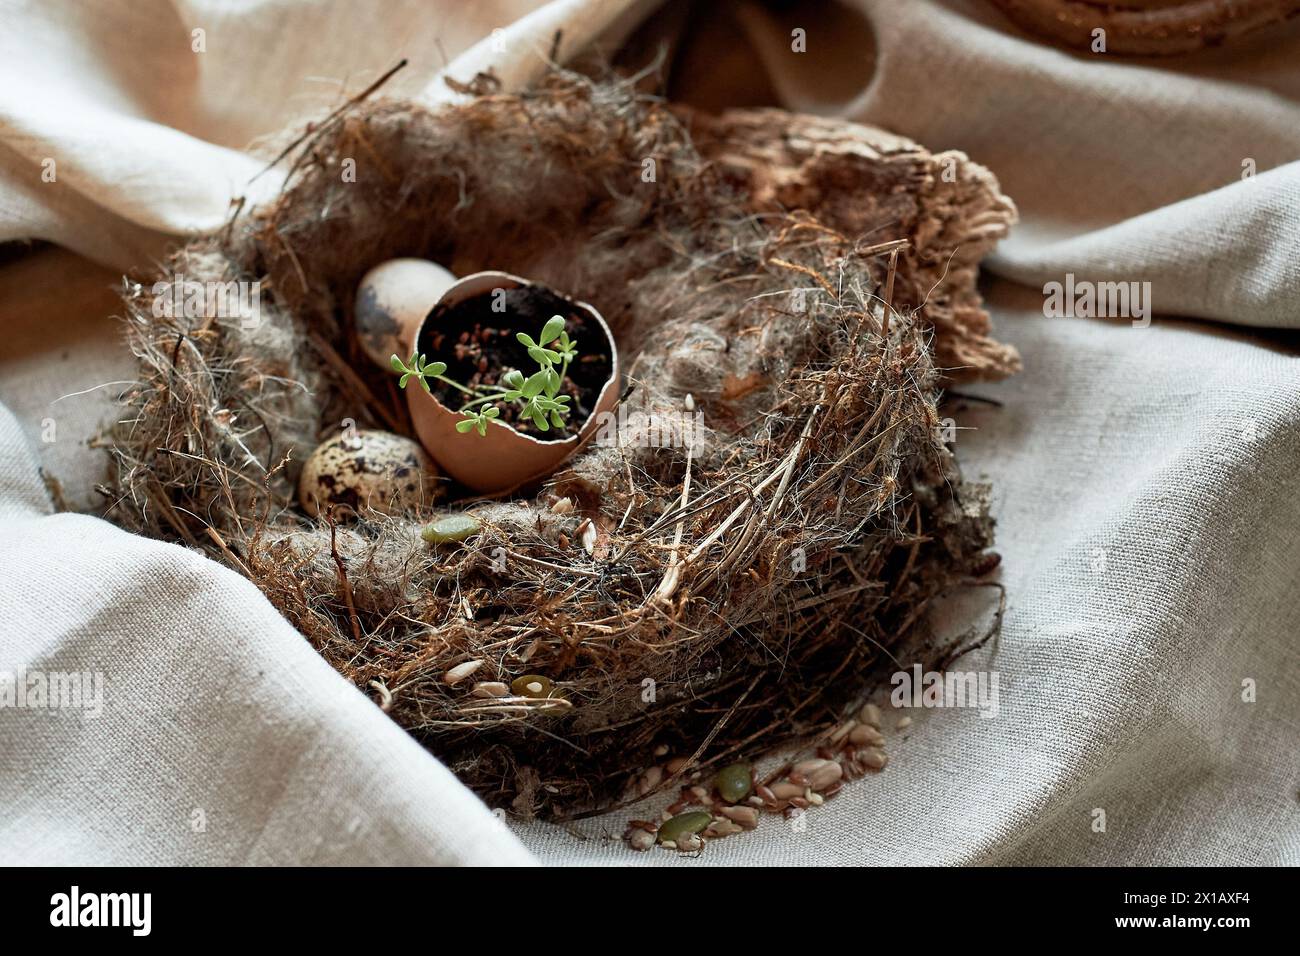 Un nido fatto di ramoscelli e erba contiene un uovo rotto. I materiali naturali mostrano segni di una recente perdita in questo piatto di piante terrestri Foto Stock